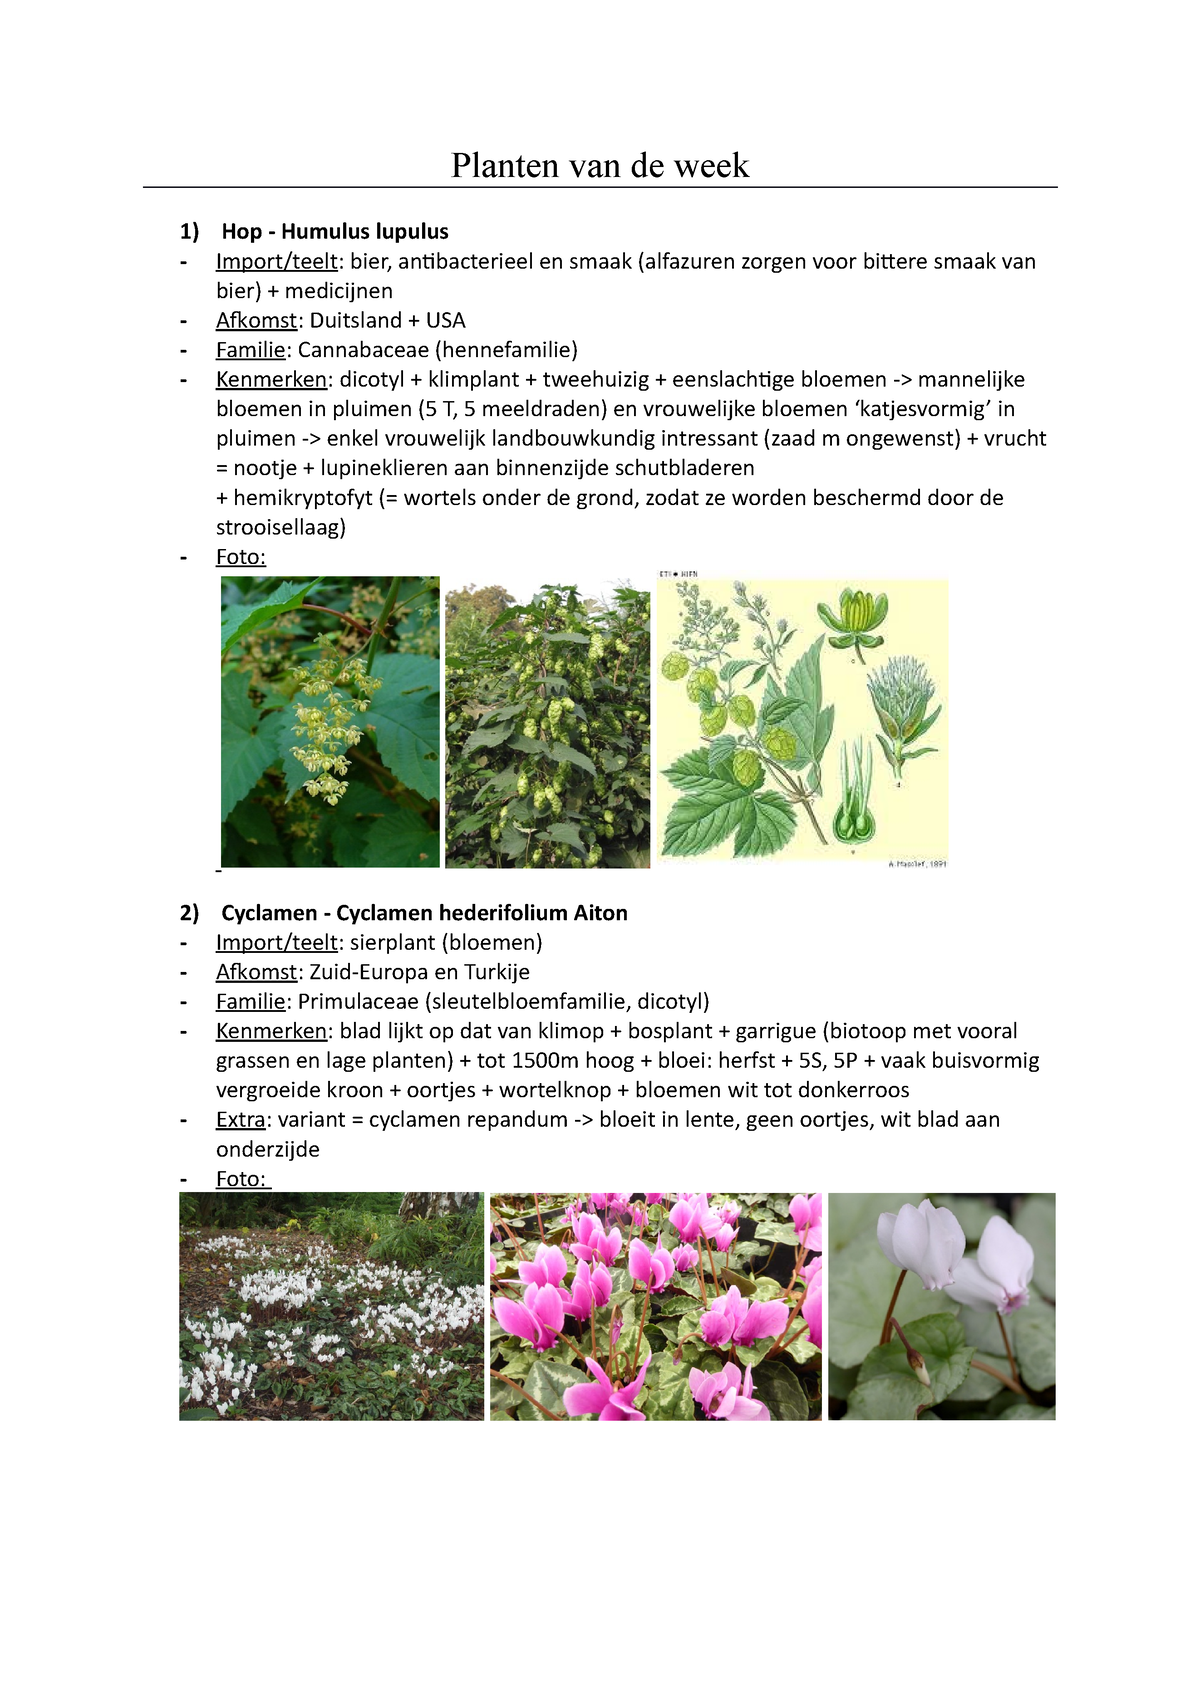 Serie van Schaduw tiener Planten van de week - Planten van de week Hop - Humulus lupulus  Import/teelt: bier, antibacterieel - Studocu